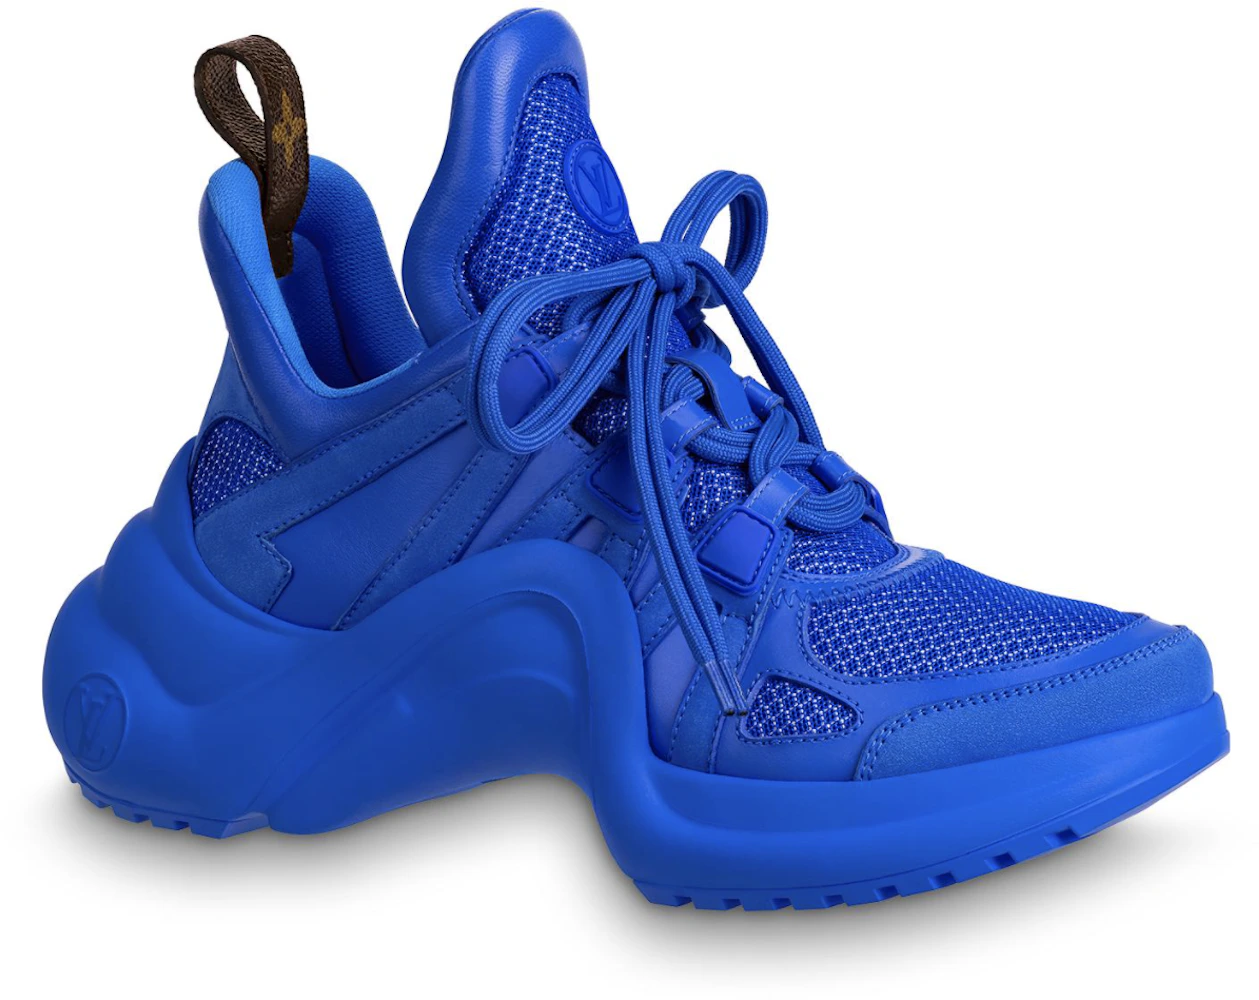 LOUIS VUITTON Calfskin LV Archlight Gradient Sneakers 38 Light Blue 1218916